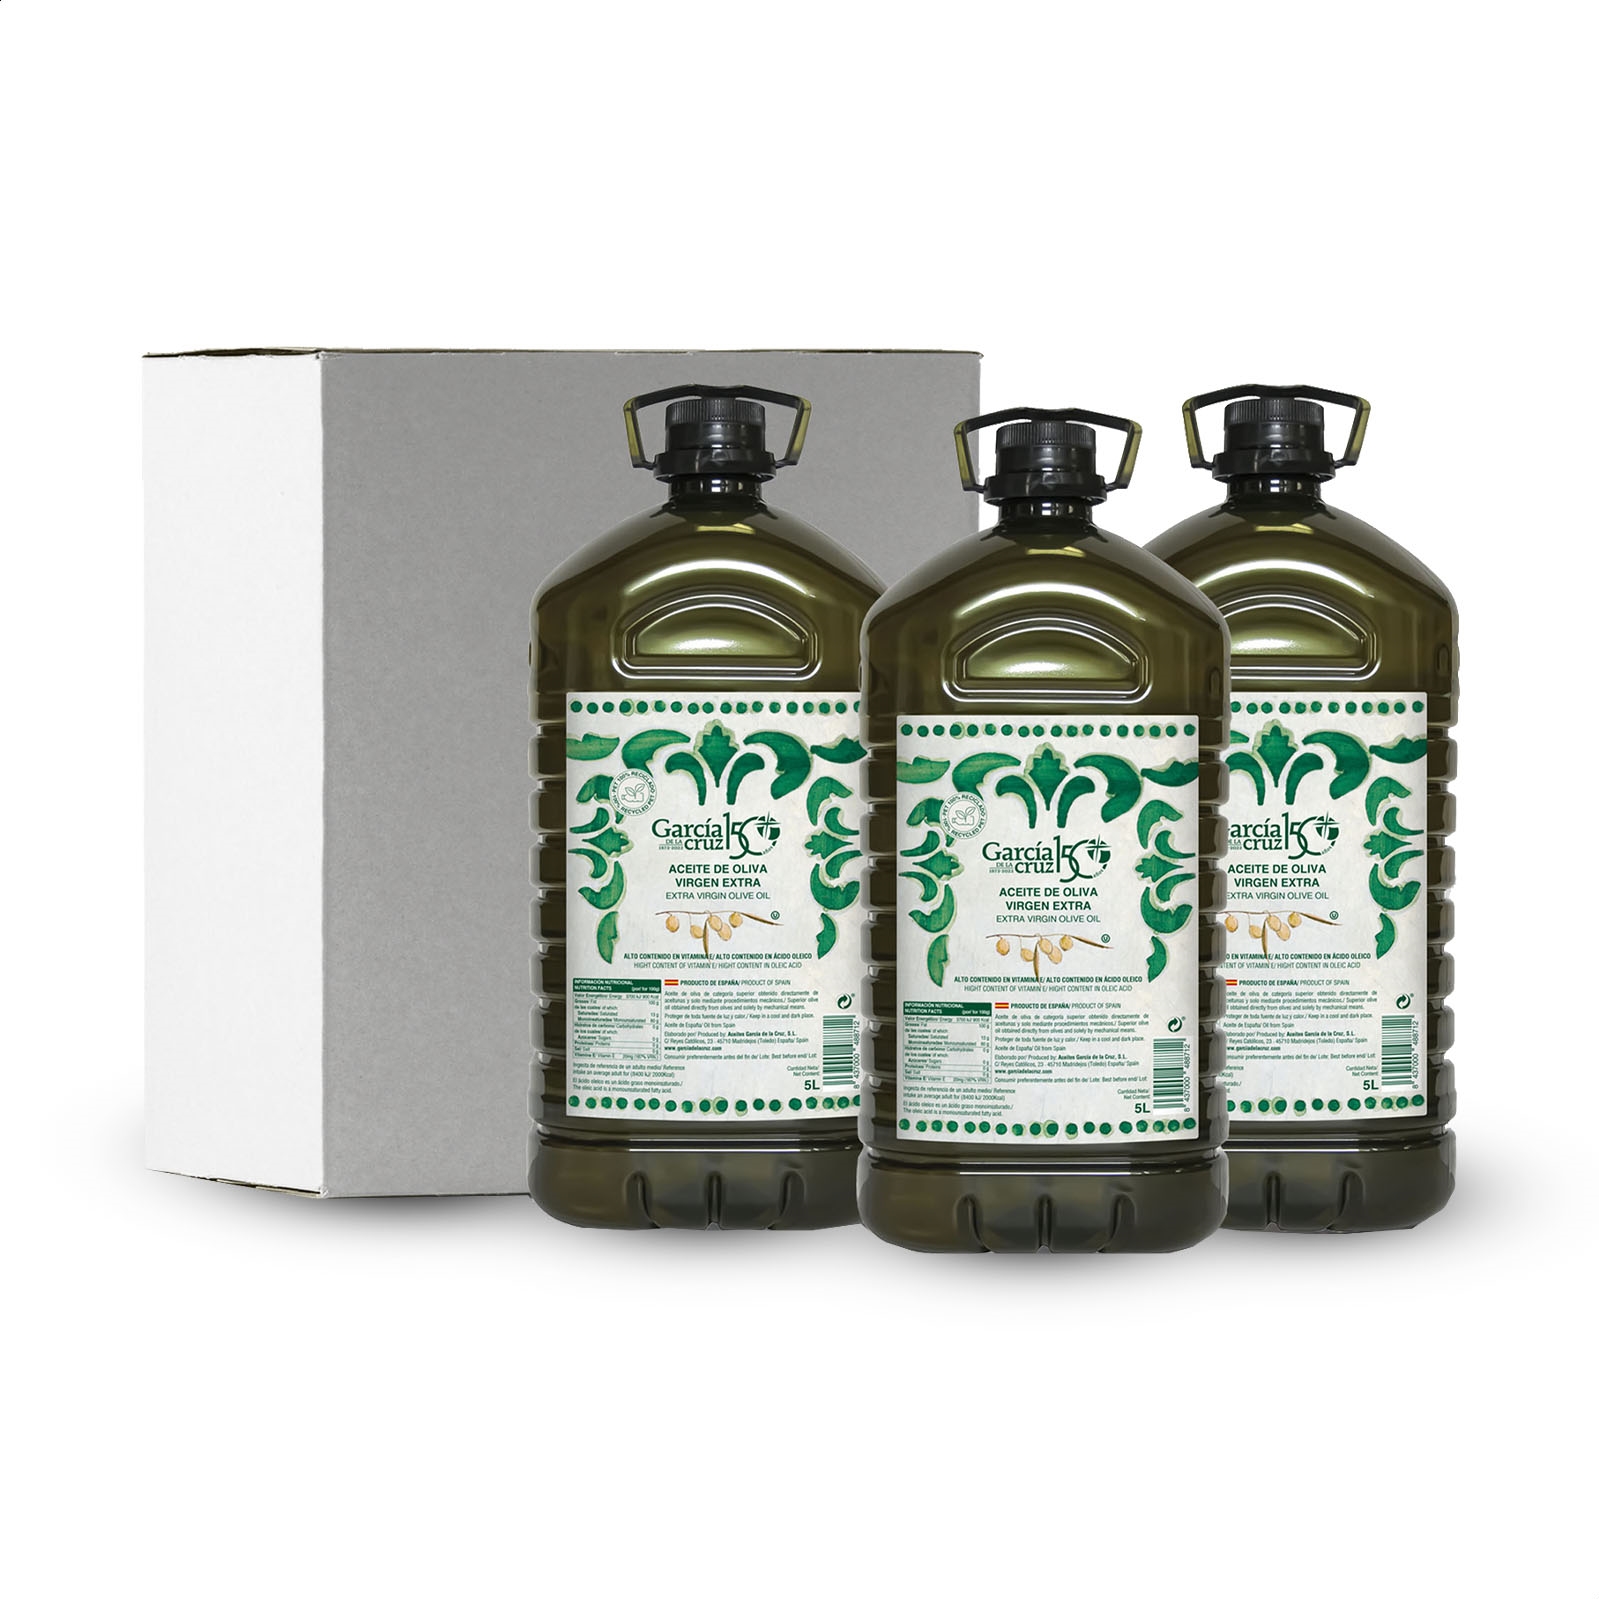 García de la Cruz - Aceite de oliva virgen extra en garrafa 5L, 3uds